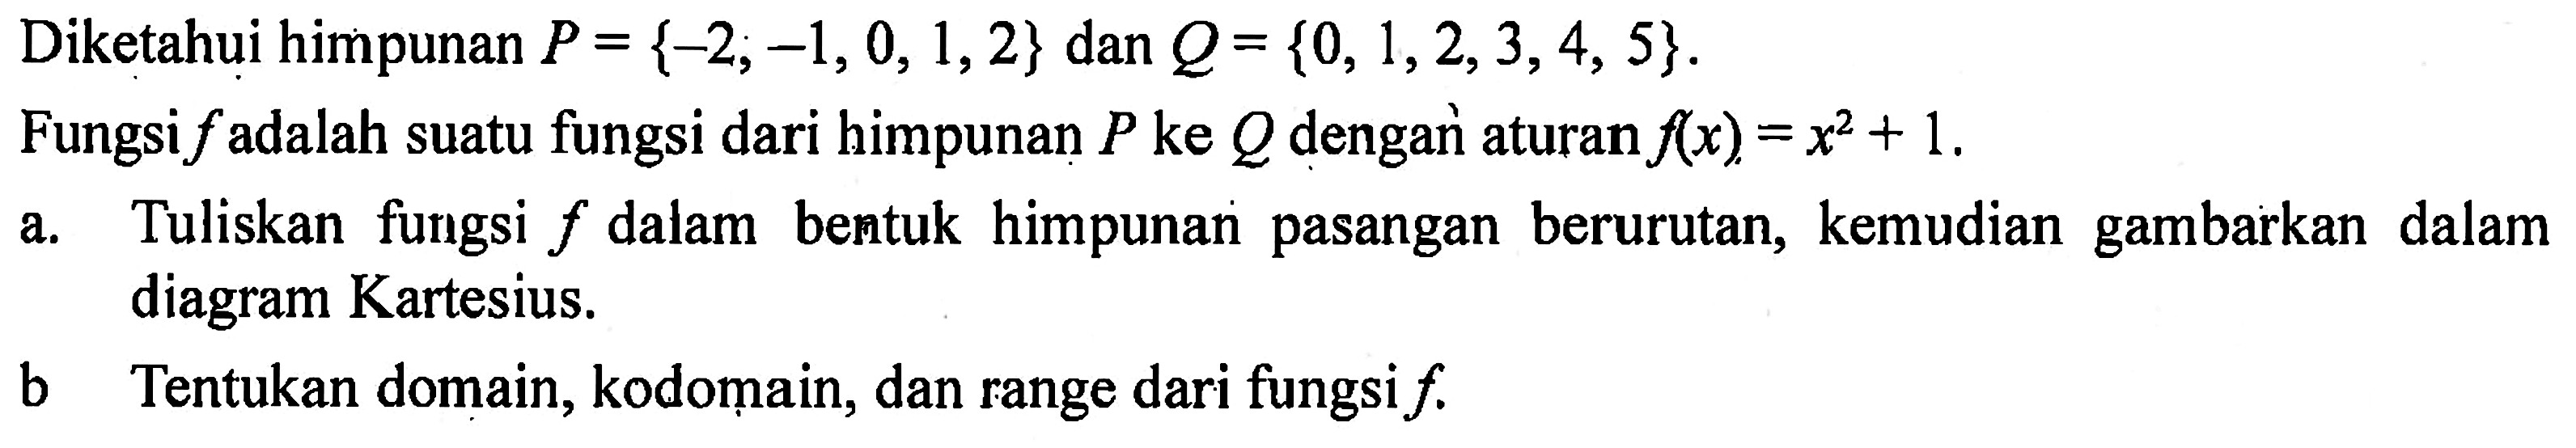 Diketahui himpunan P = {-2, -1, 0, 1,2} dan Q= {0, 1,2, 3,4, 5}. Fungsi f adalah suatu fungsi dari himpunan P ke Q dengar aturan f(x) = x^2 + 1. a. Tuliskan fungsi f dalam bentuk himpunan pasangan berurutan, kemudian gambarkan dalam diagram Kartesius. b. Tentukan domain,kodomain, dan range dari fungsi f.